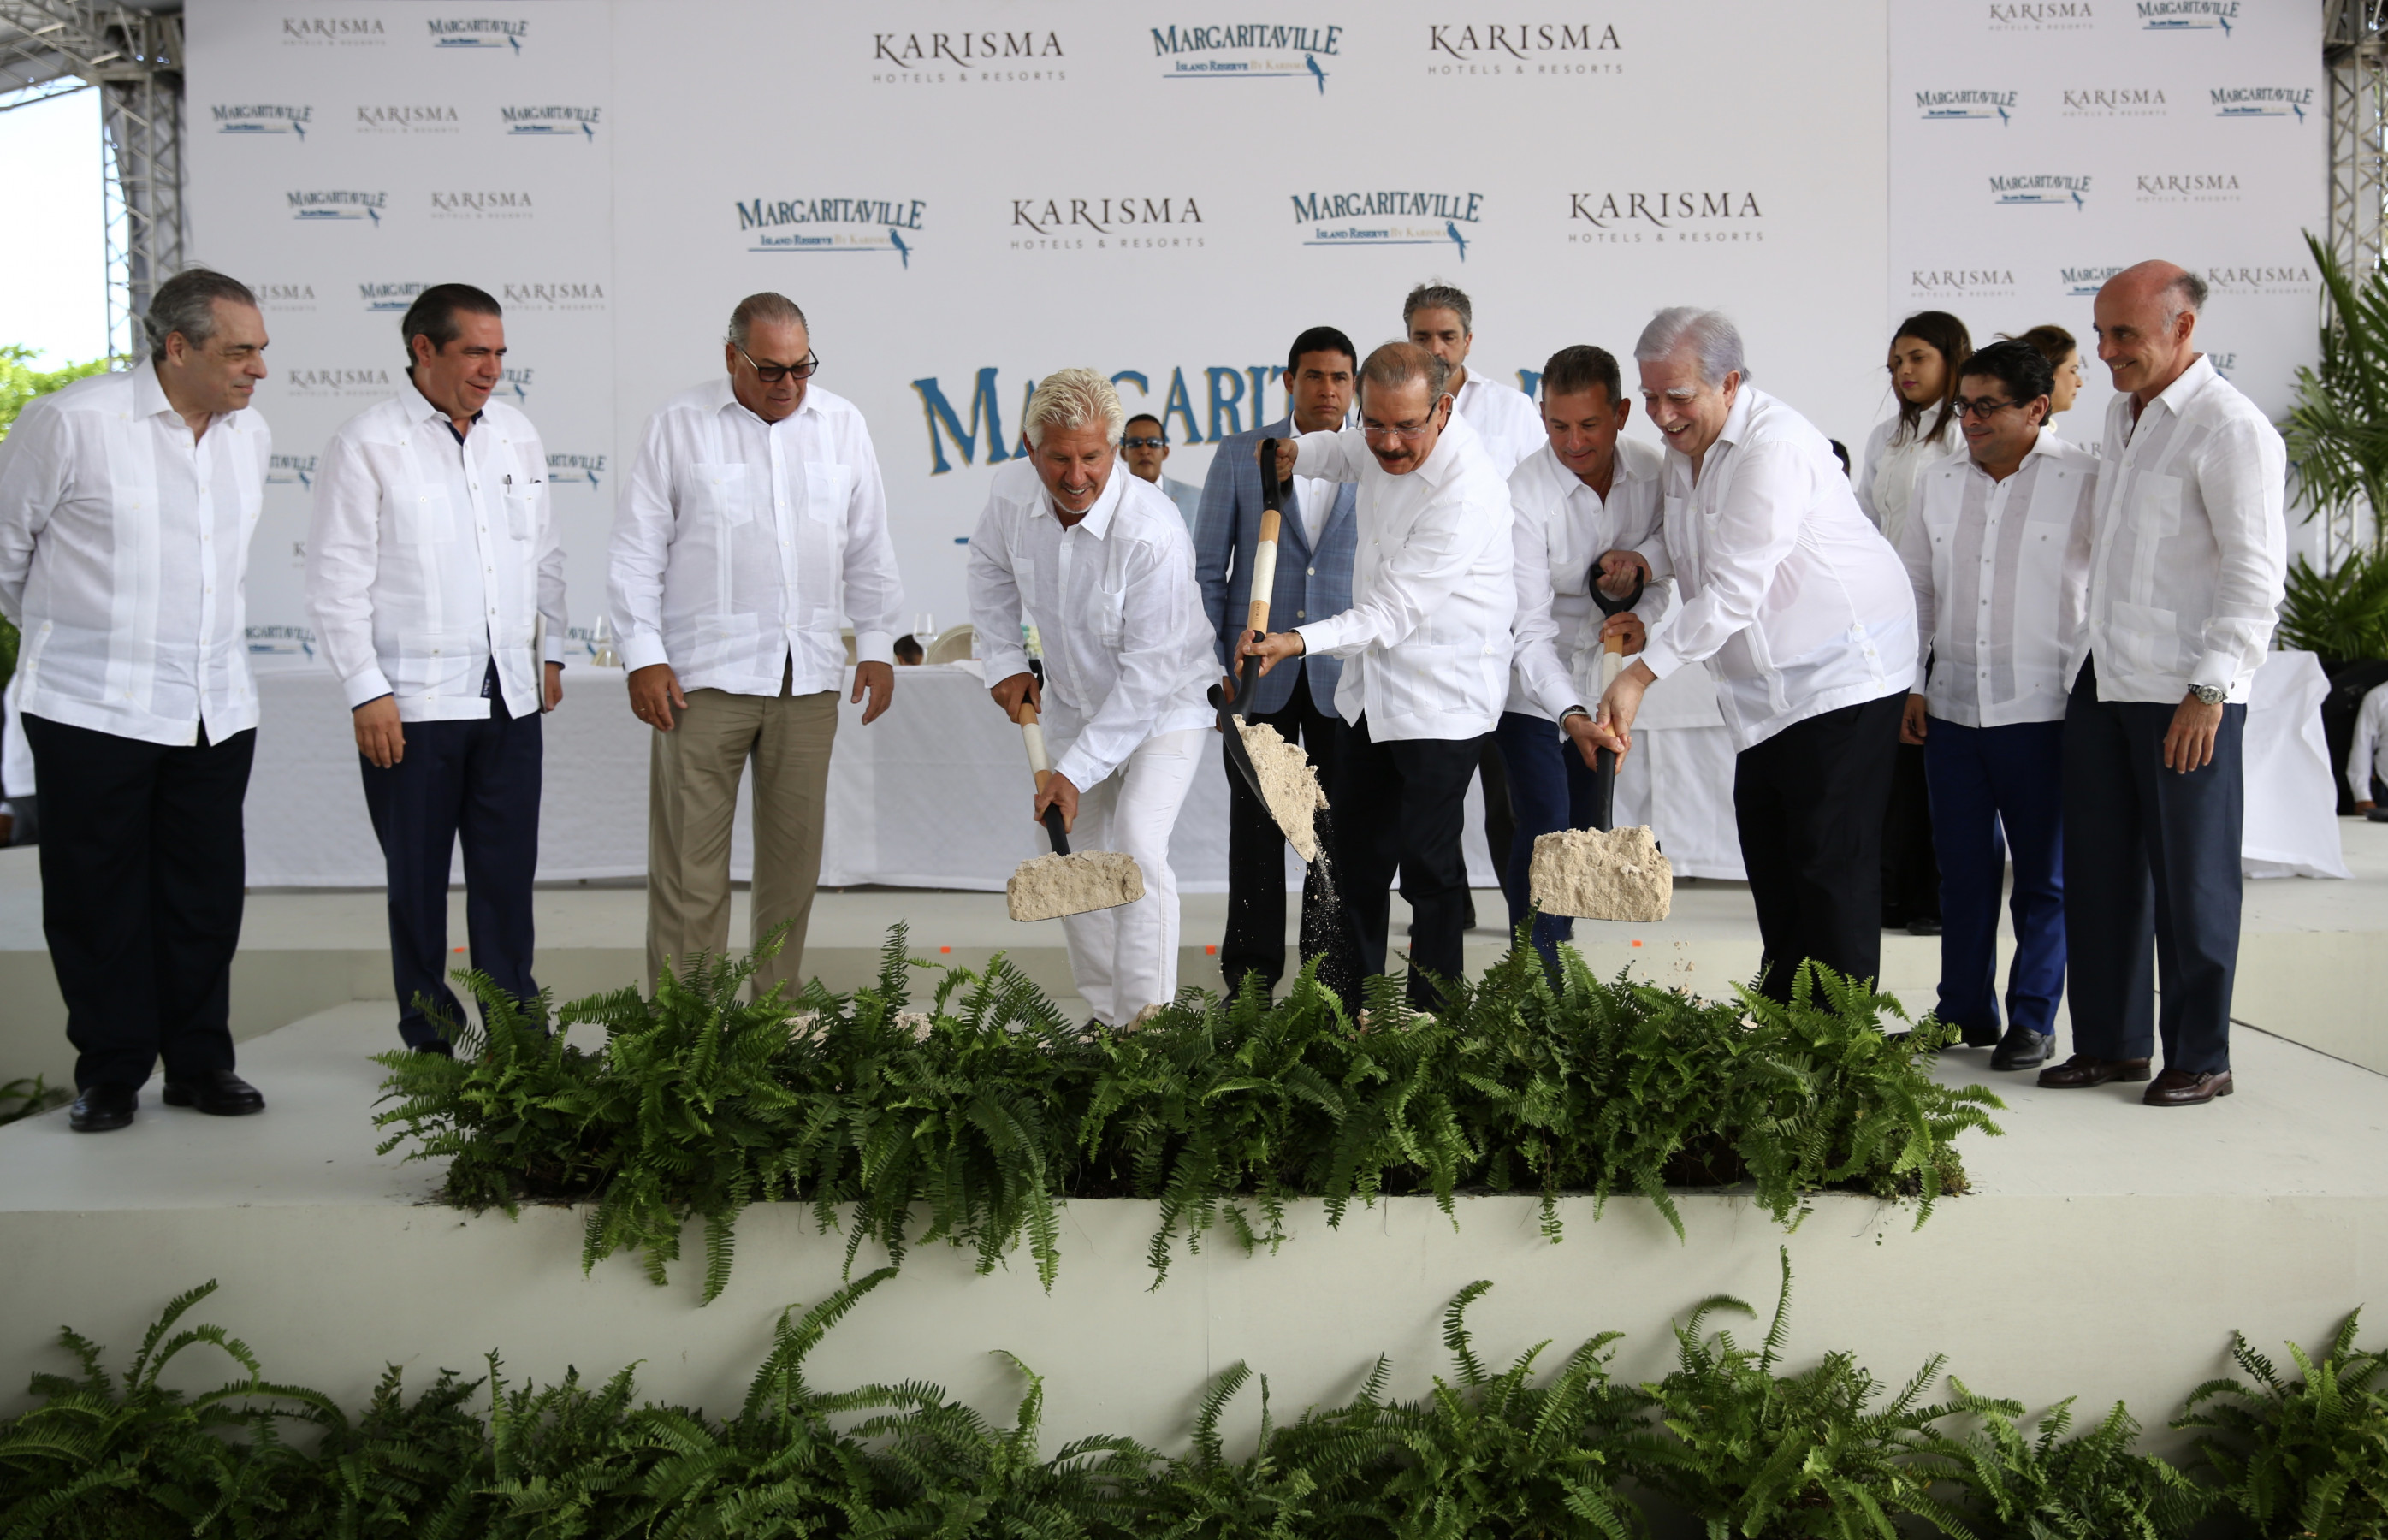 REPÚBLICA DOMINICANA: Danilo Medina encabeza primer palazo resort Margaritaville Island Reserve by Karisma, sumará 519 nuevas habitaciones y creará 1,100 empleos